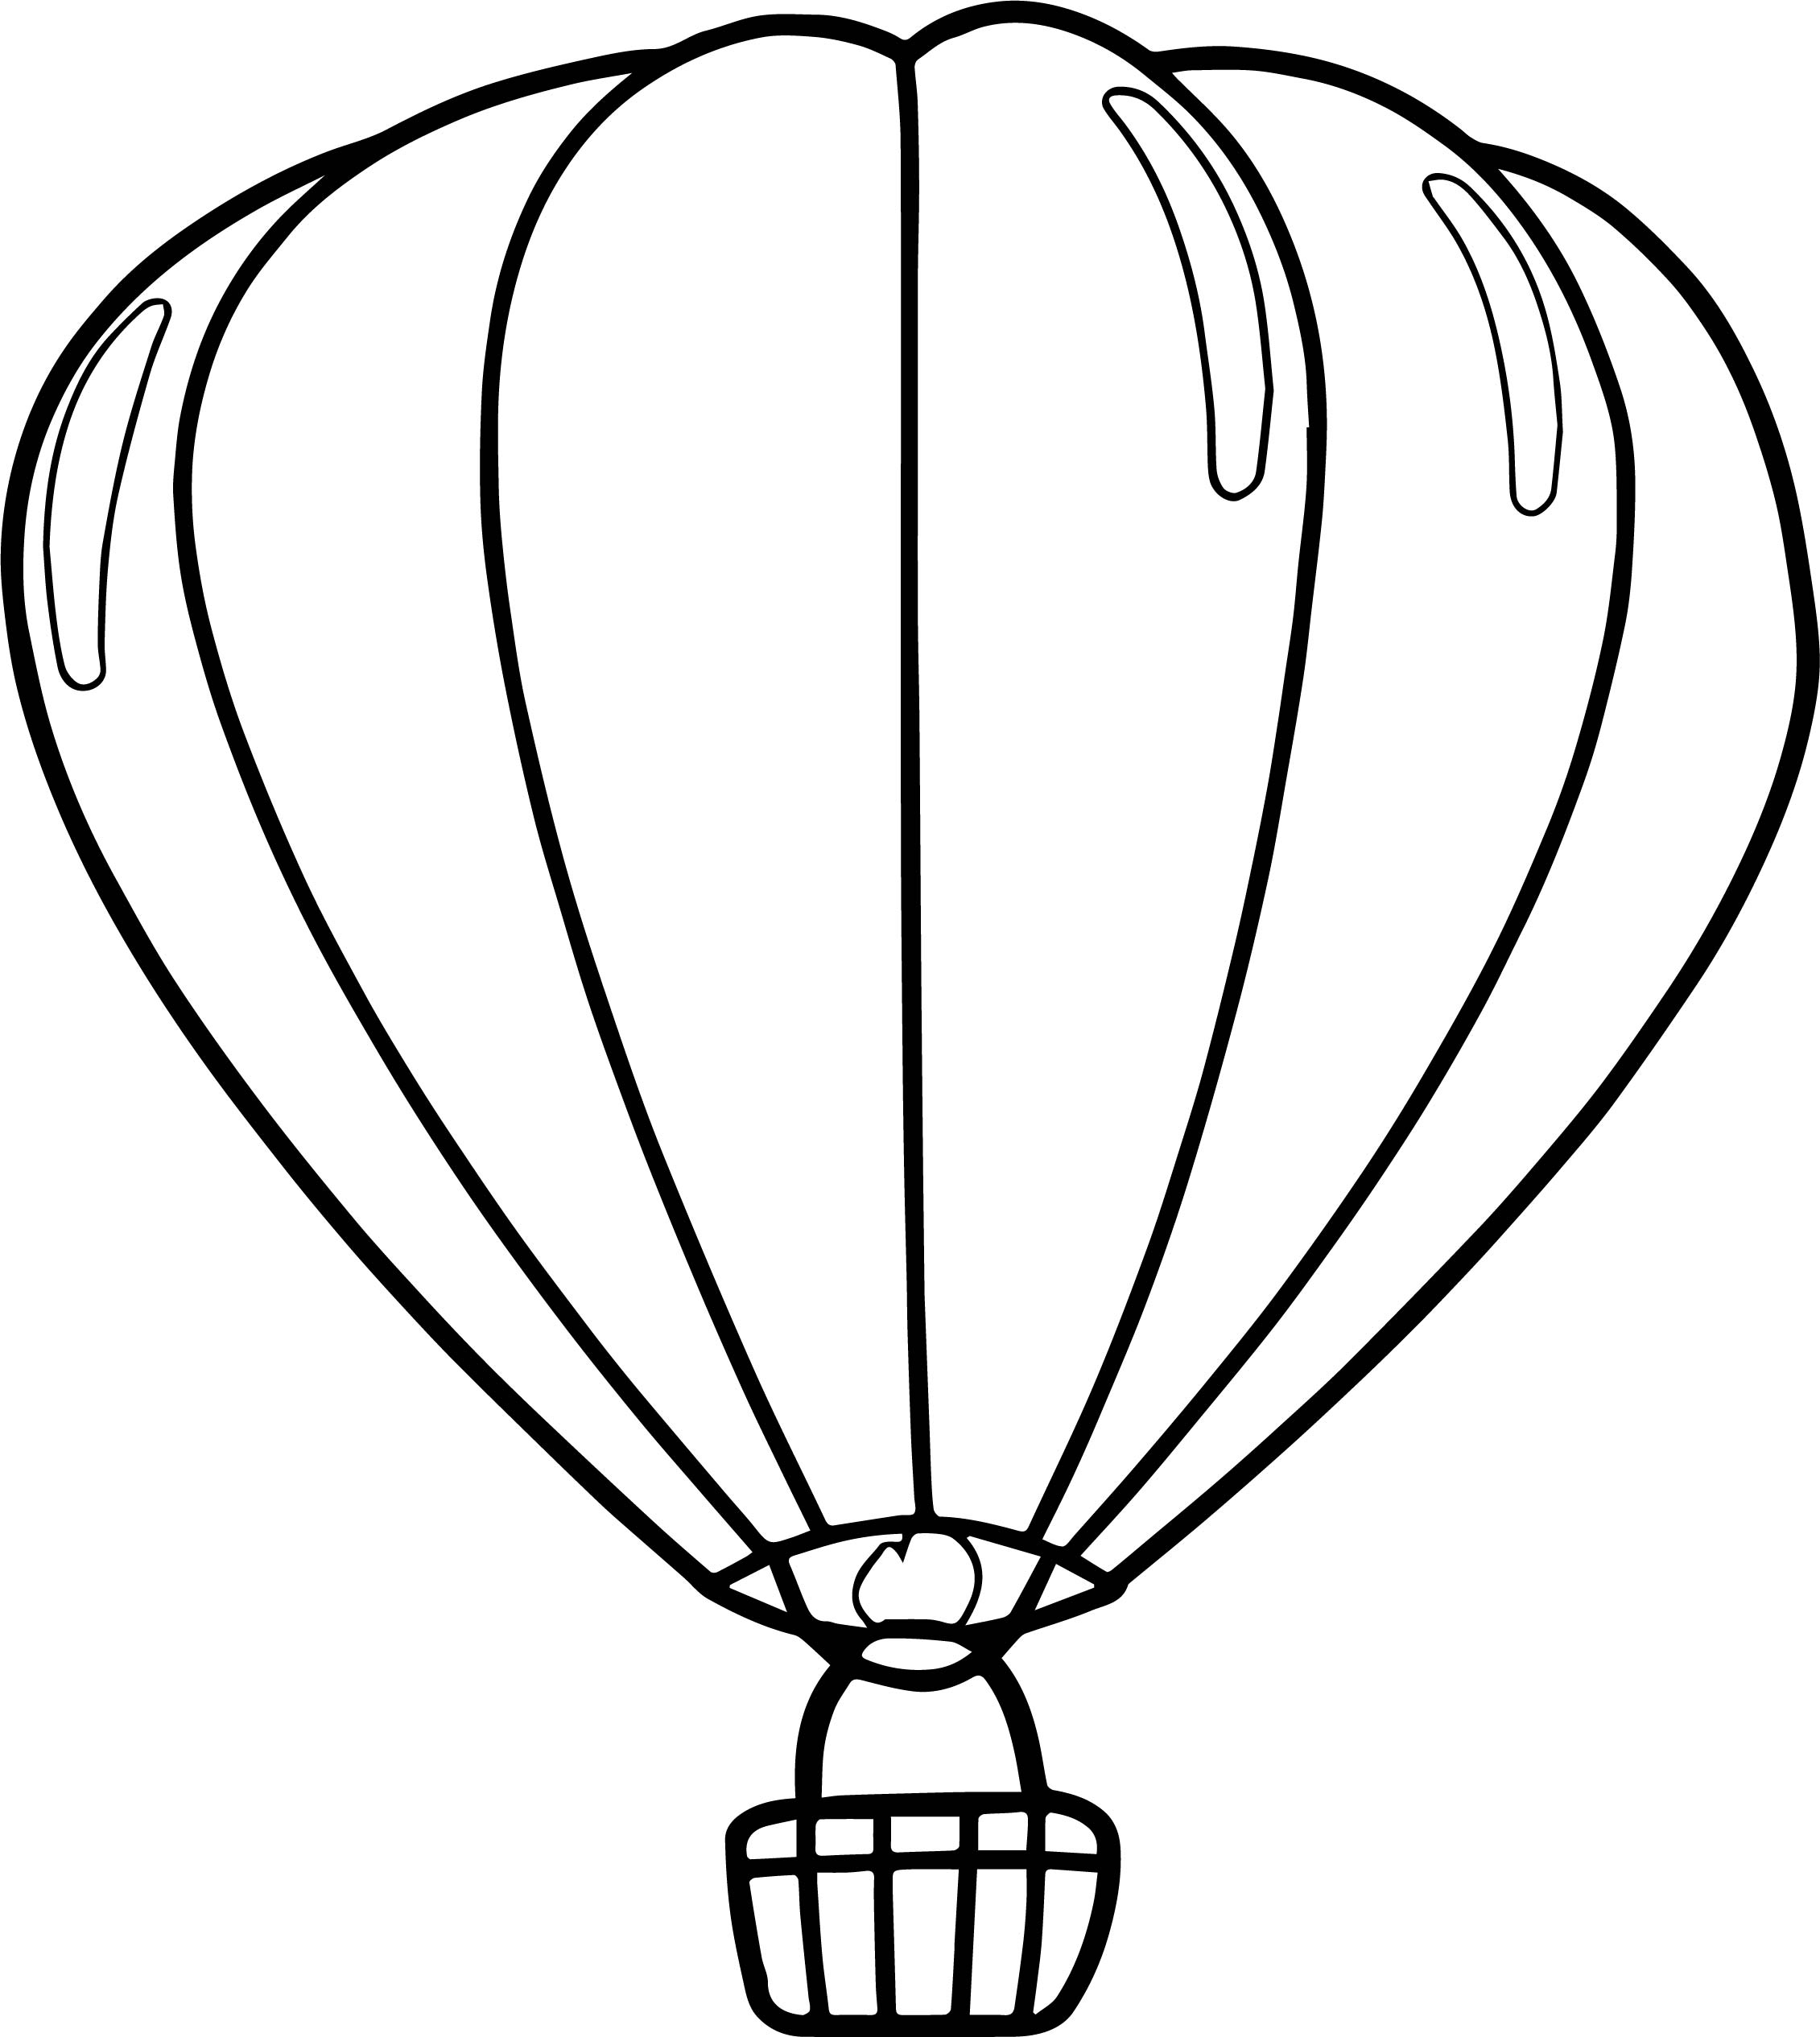 Раскраски шарика распечатать. Воздушный шар раскраска. Воздушный шар раскраска для детей. Шар воздушный с рисунком. Воздушный шар рисунок для детей.